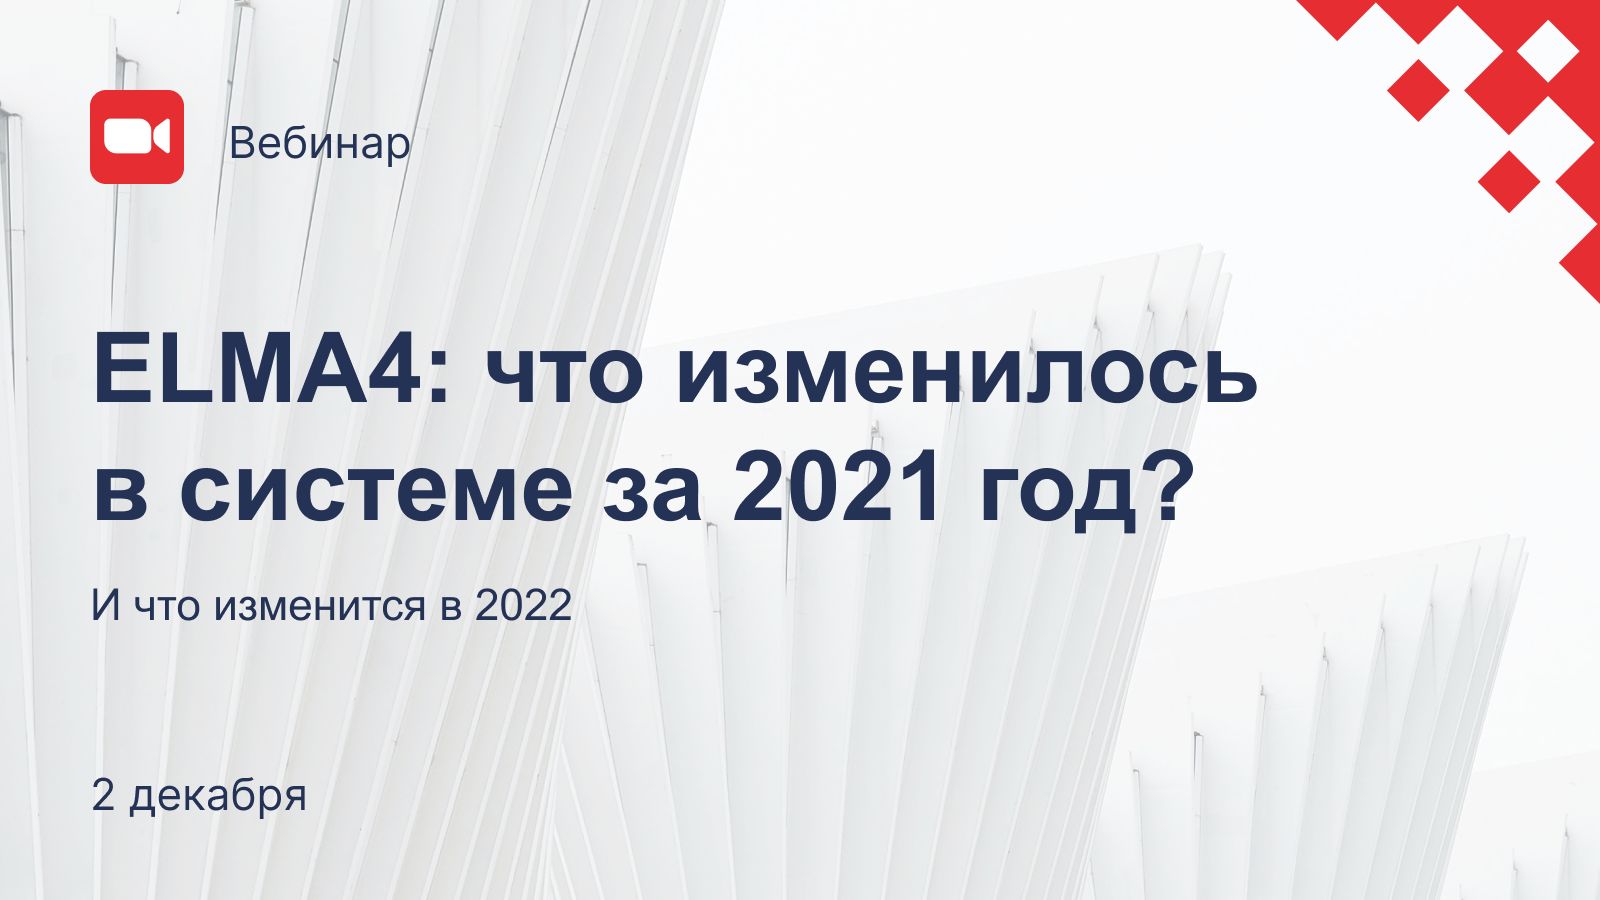 ELMA4: что изменилось в системе за 2021 год?